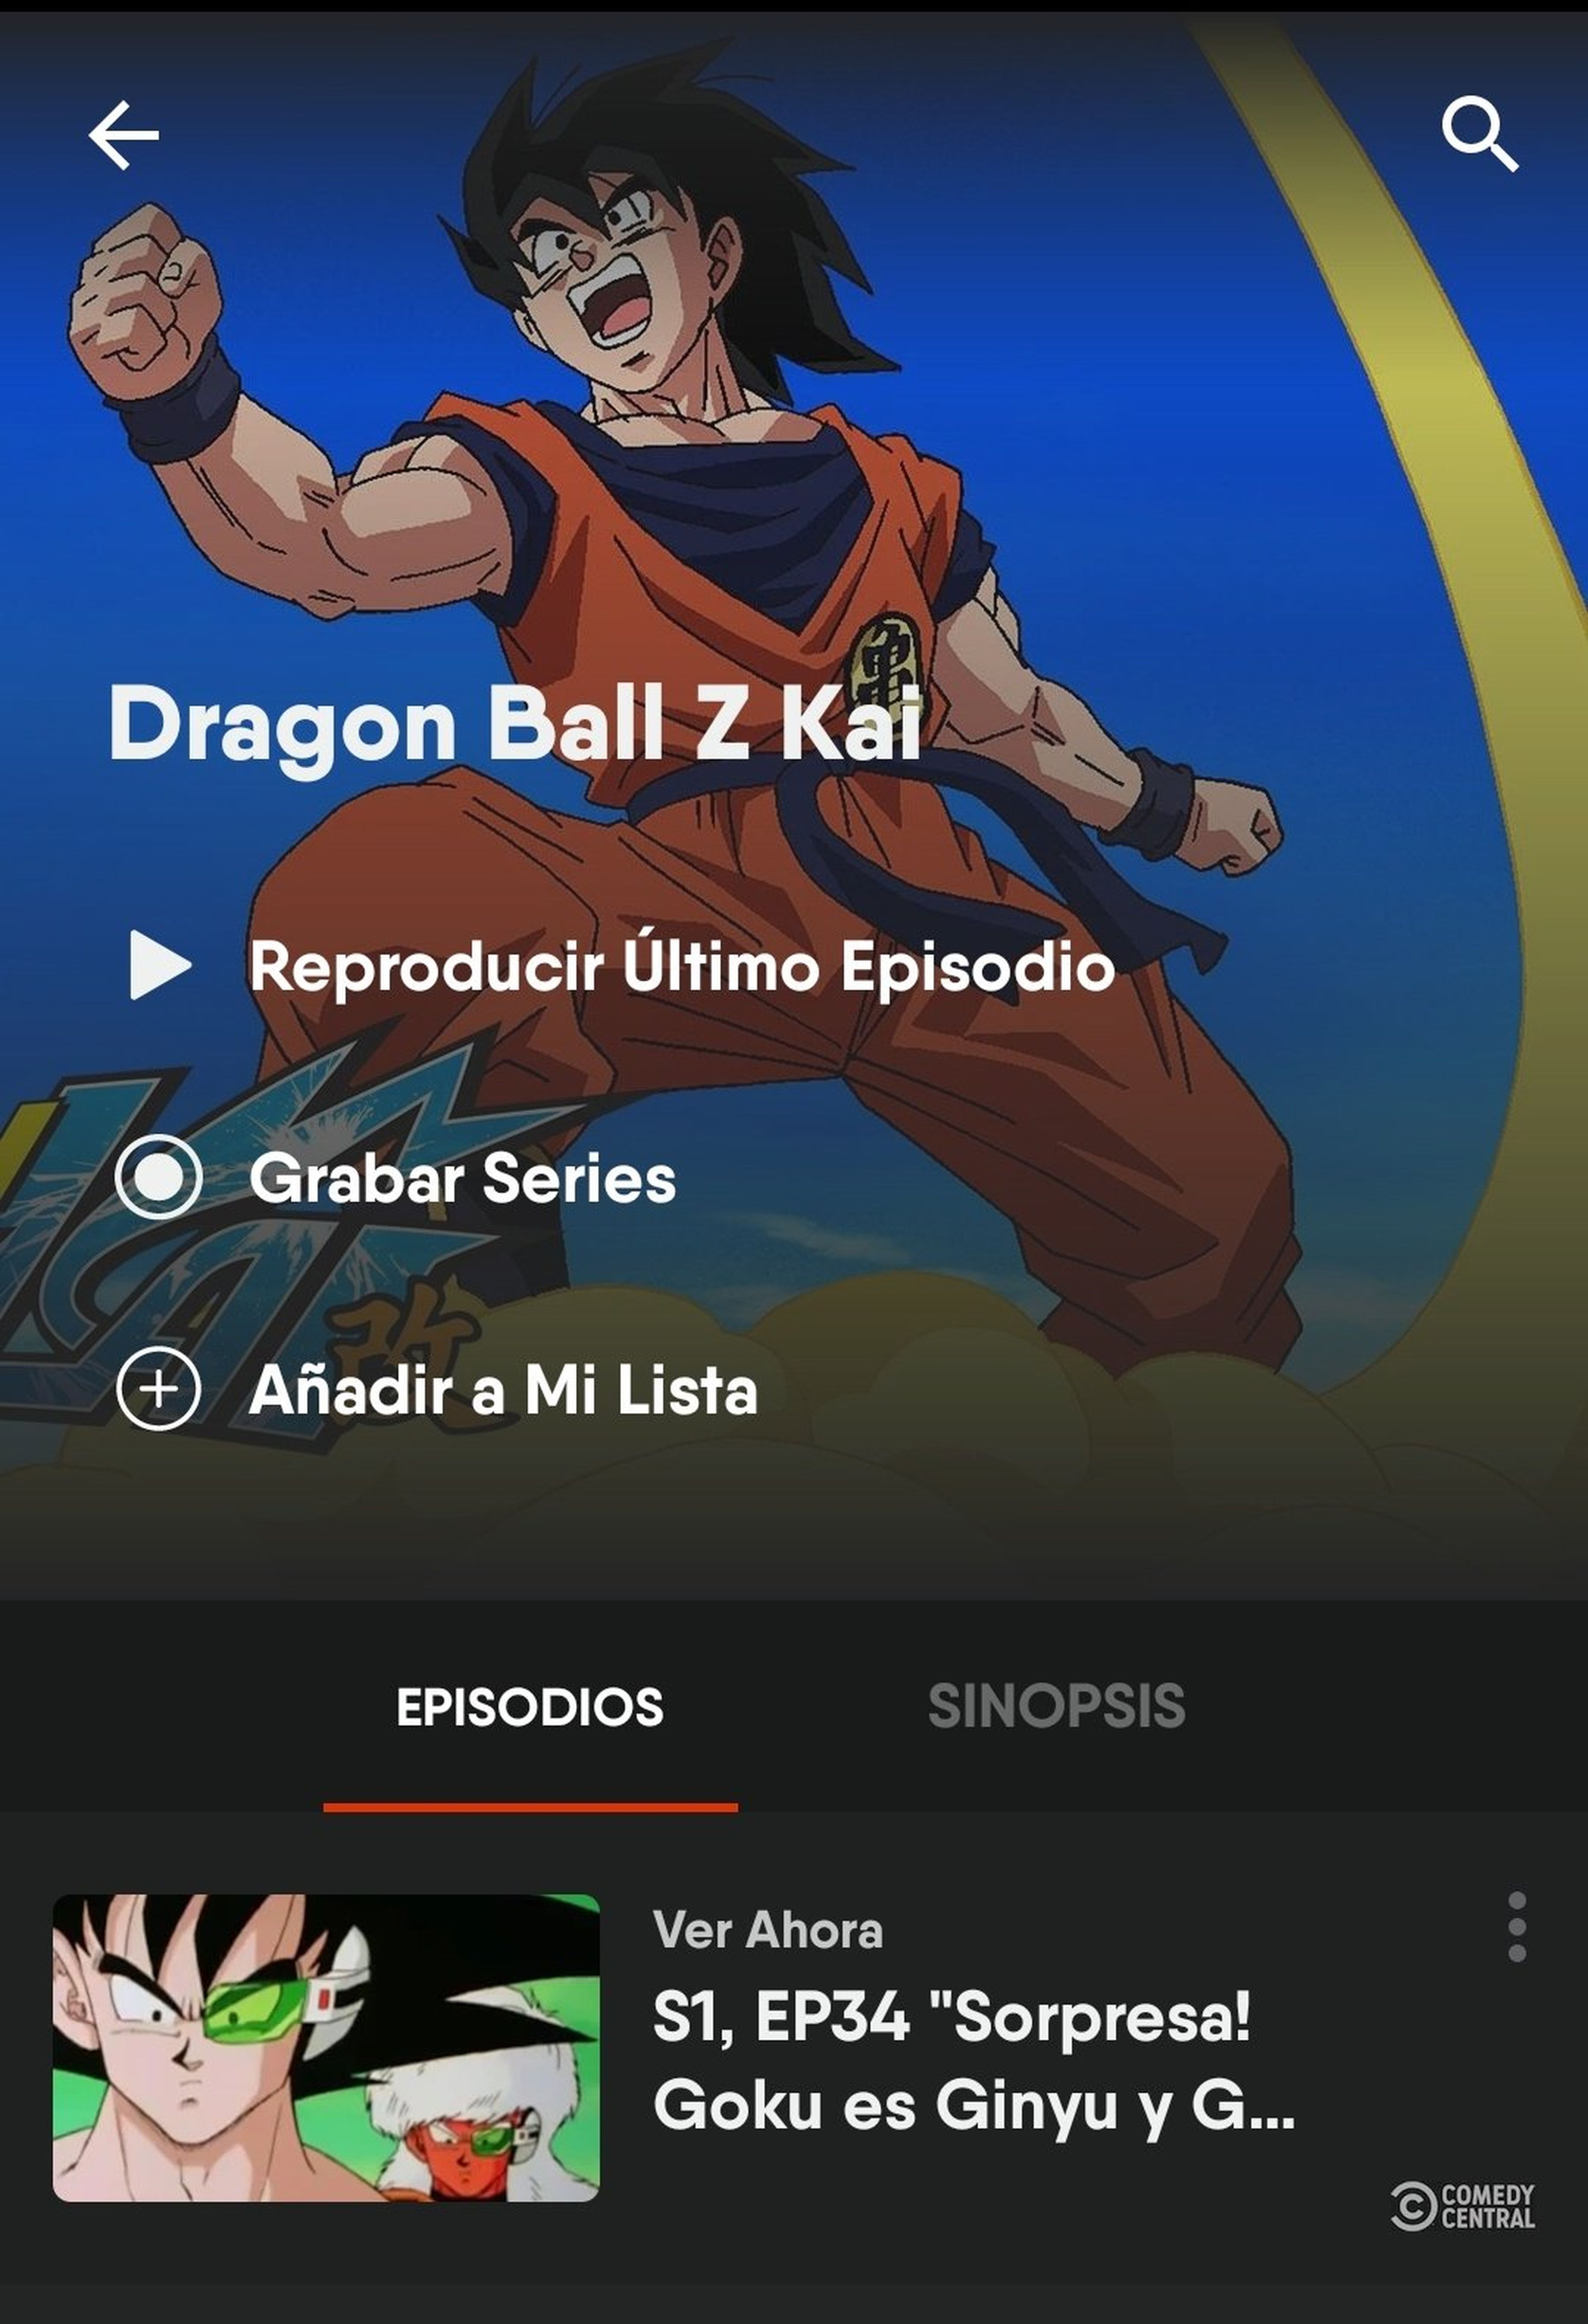 Dragon Ball Z Kai - Saltan las alarmas con el deseado estreno de la serie en castellano. ¿Verá la luz en el canal Comedy Central? 